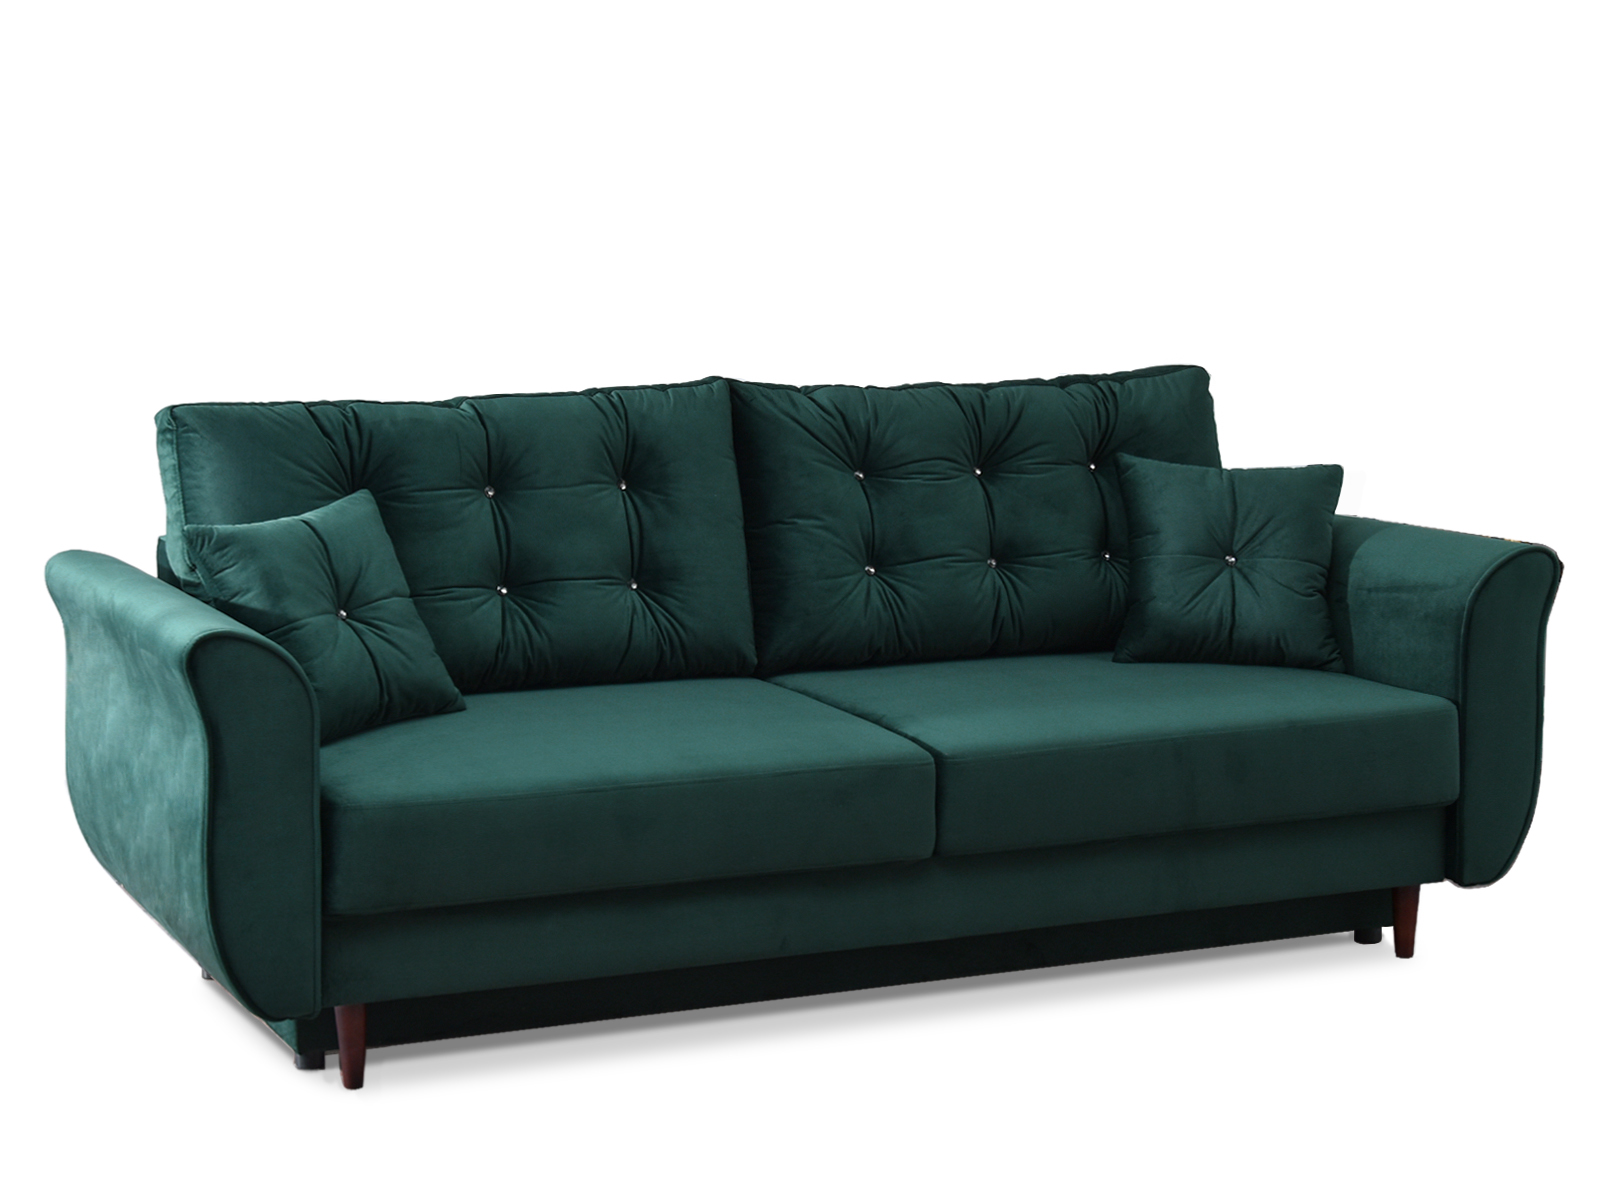 Sofa welurowa glamour LANTI ZIELONA pikowana z poduszkami - wolnostojący tył